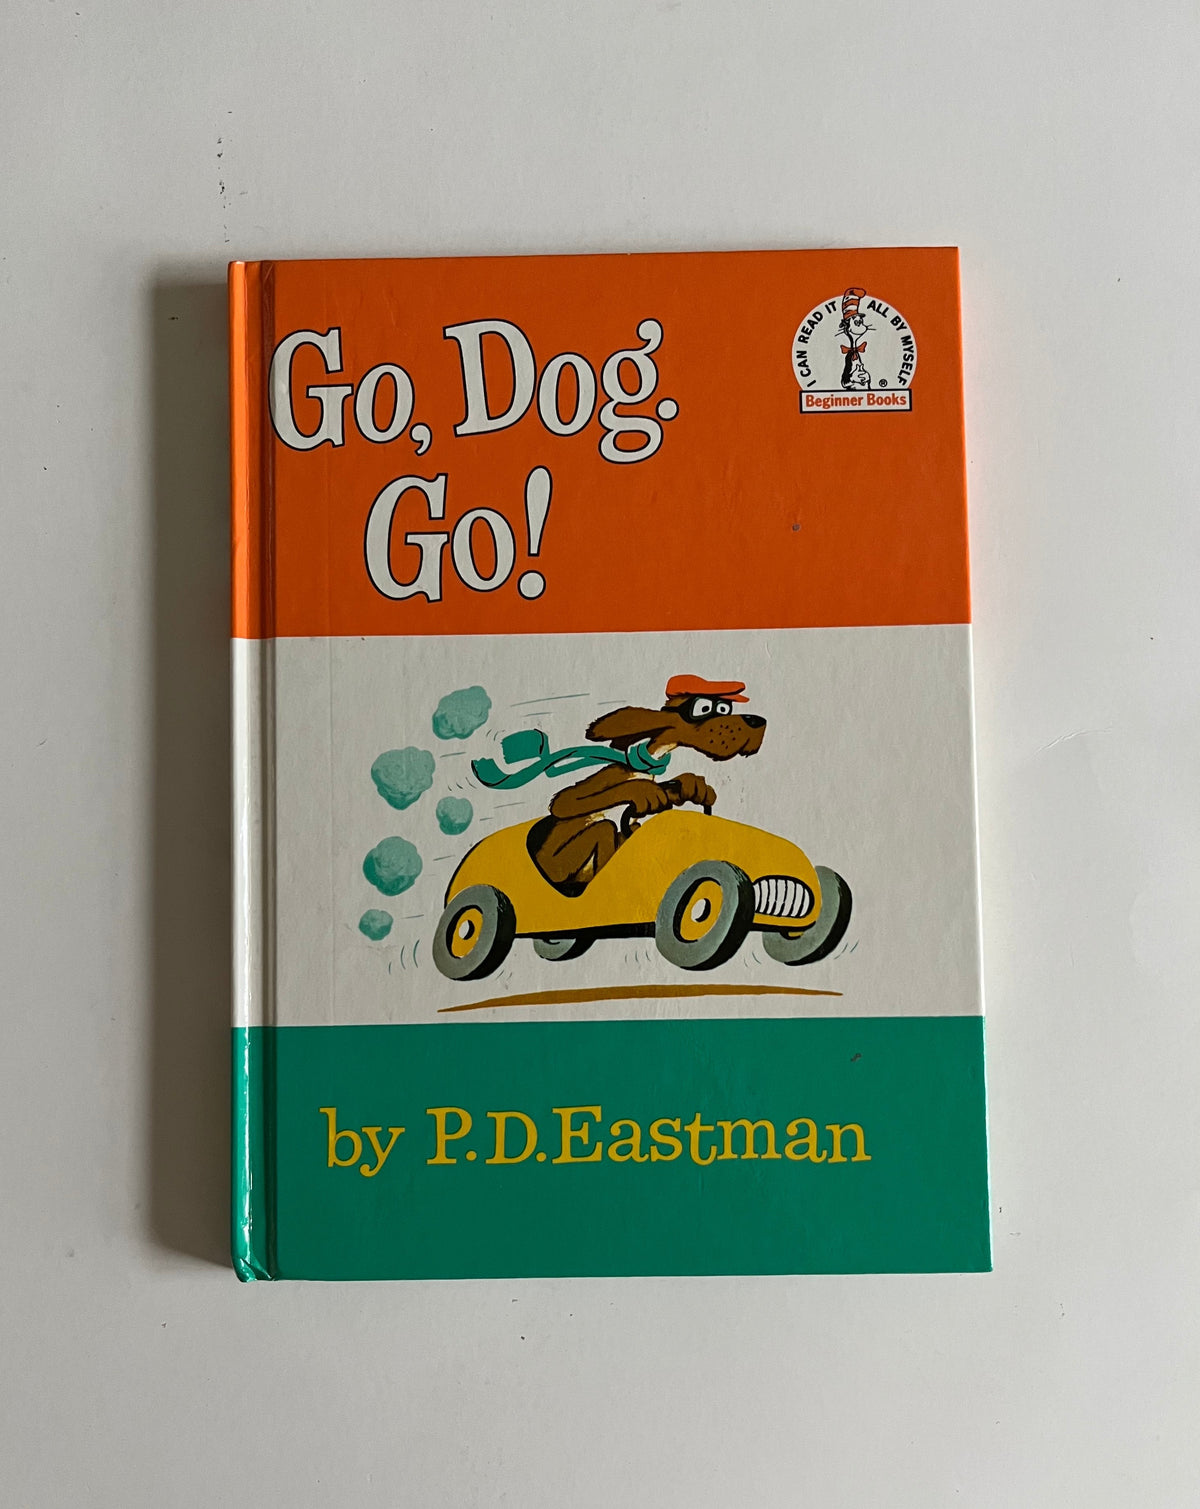 Go, Dog, Go! by Dr. Seuss